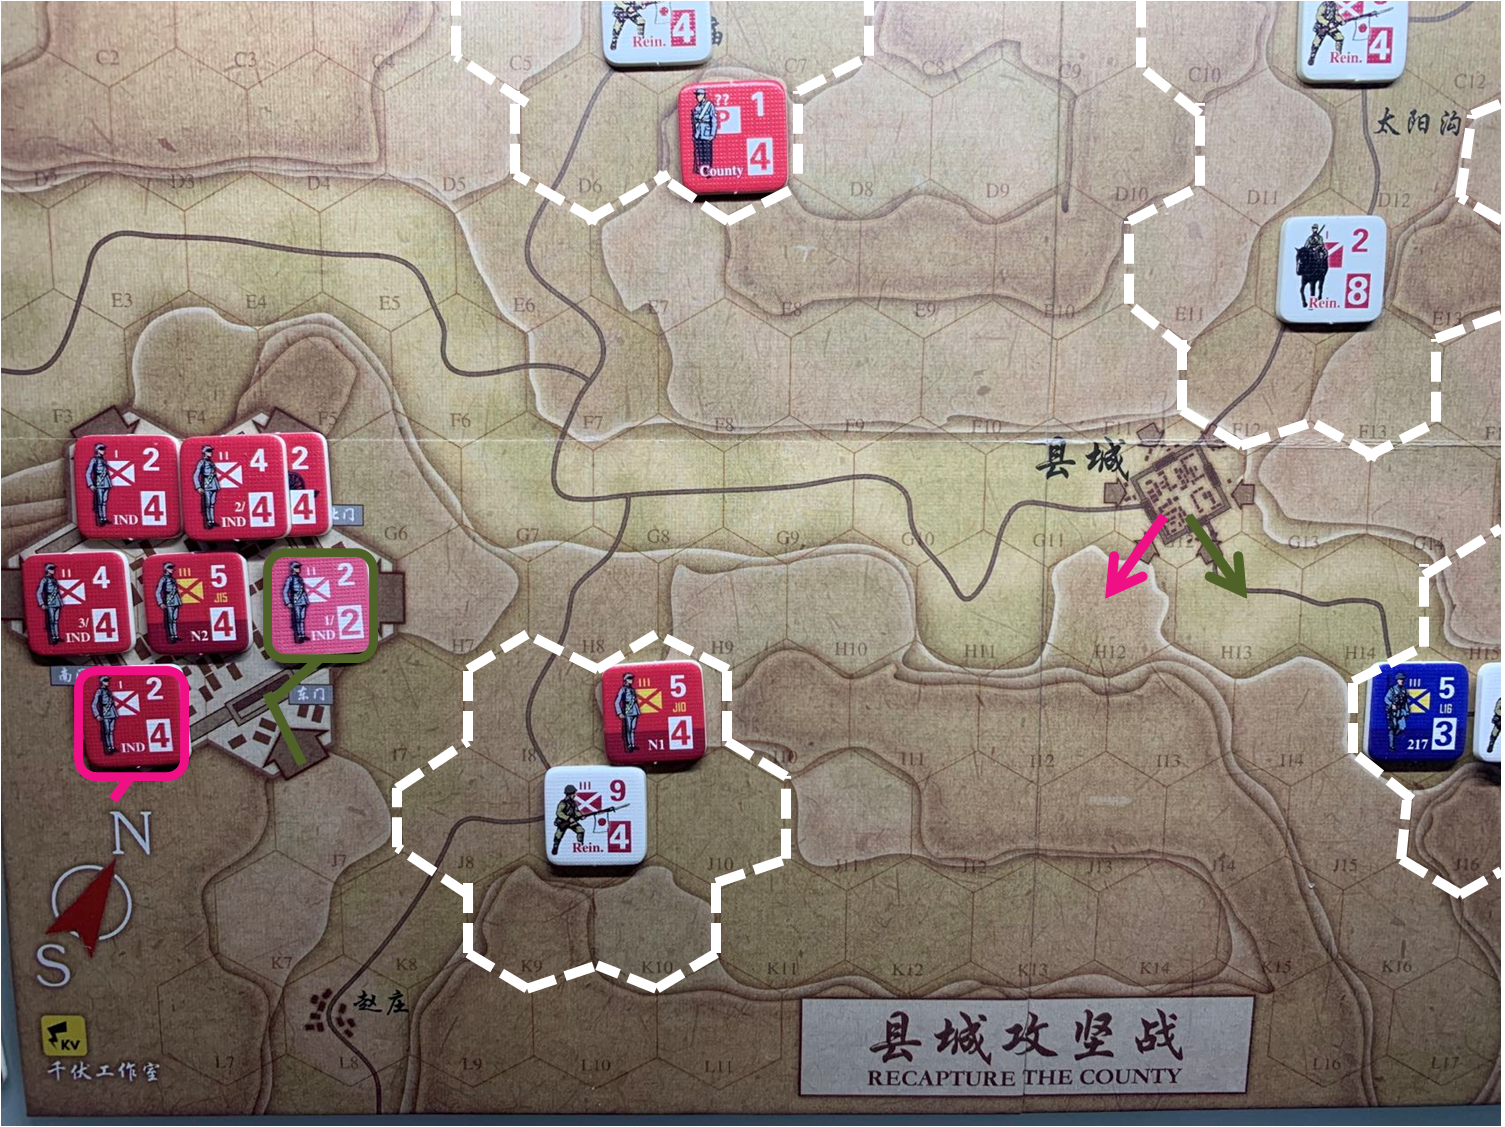 第四回合縣城內共軍獨立團部隊對於移動命令5、命令6的執行計劃，及所有日軍增援部隊控制區覆蓋範圍